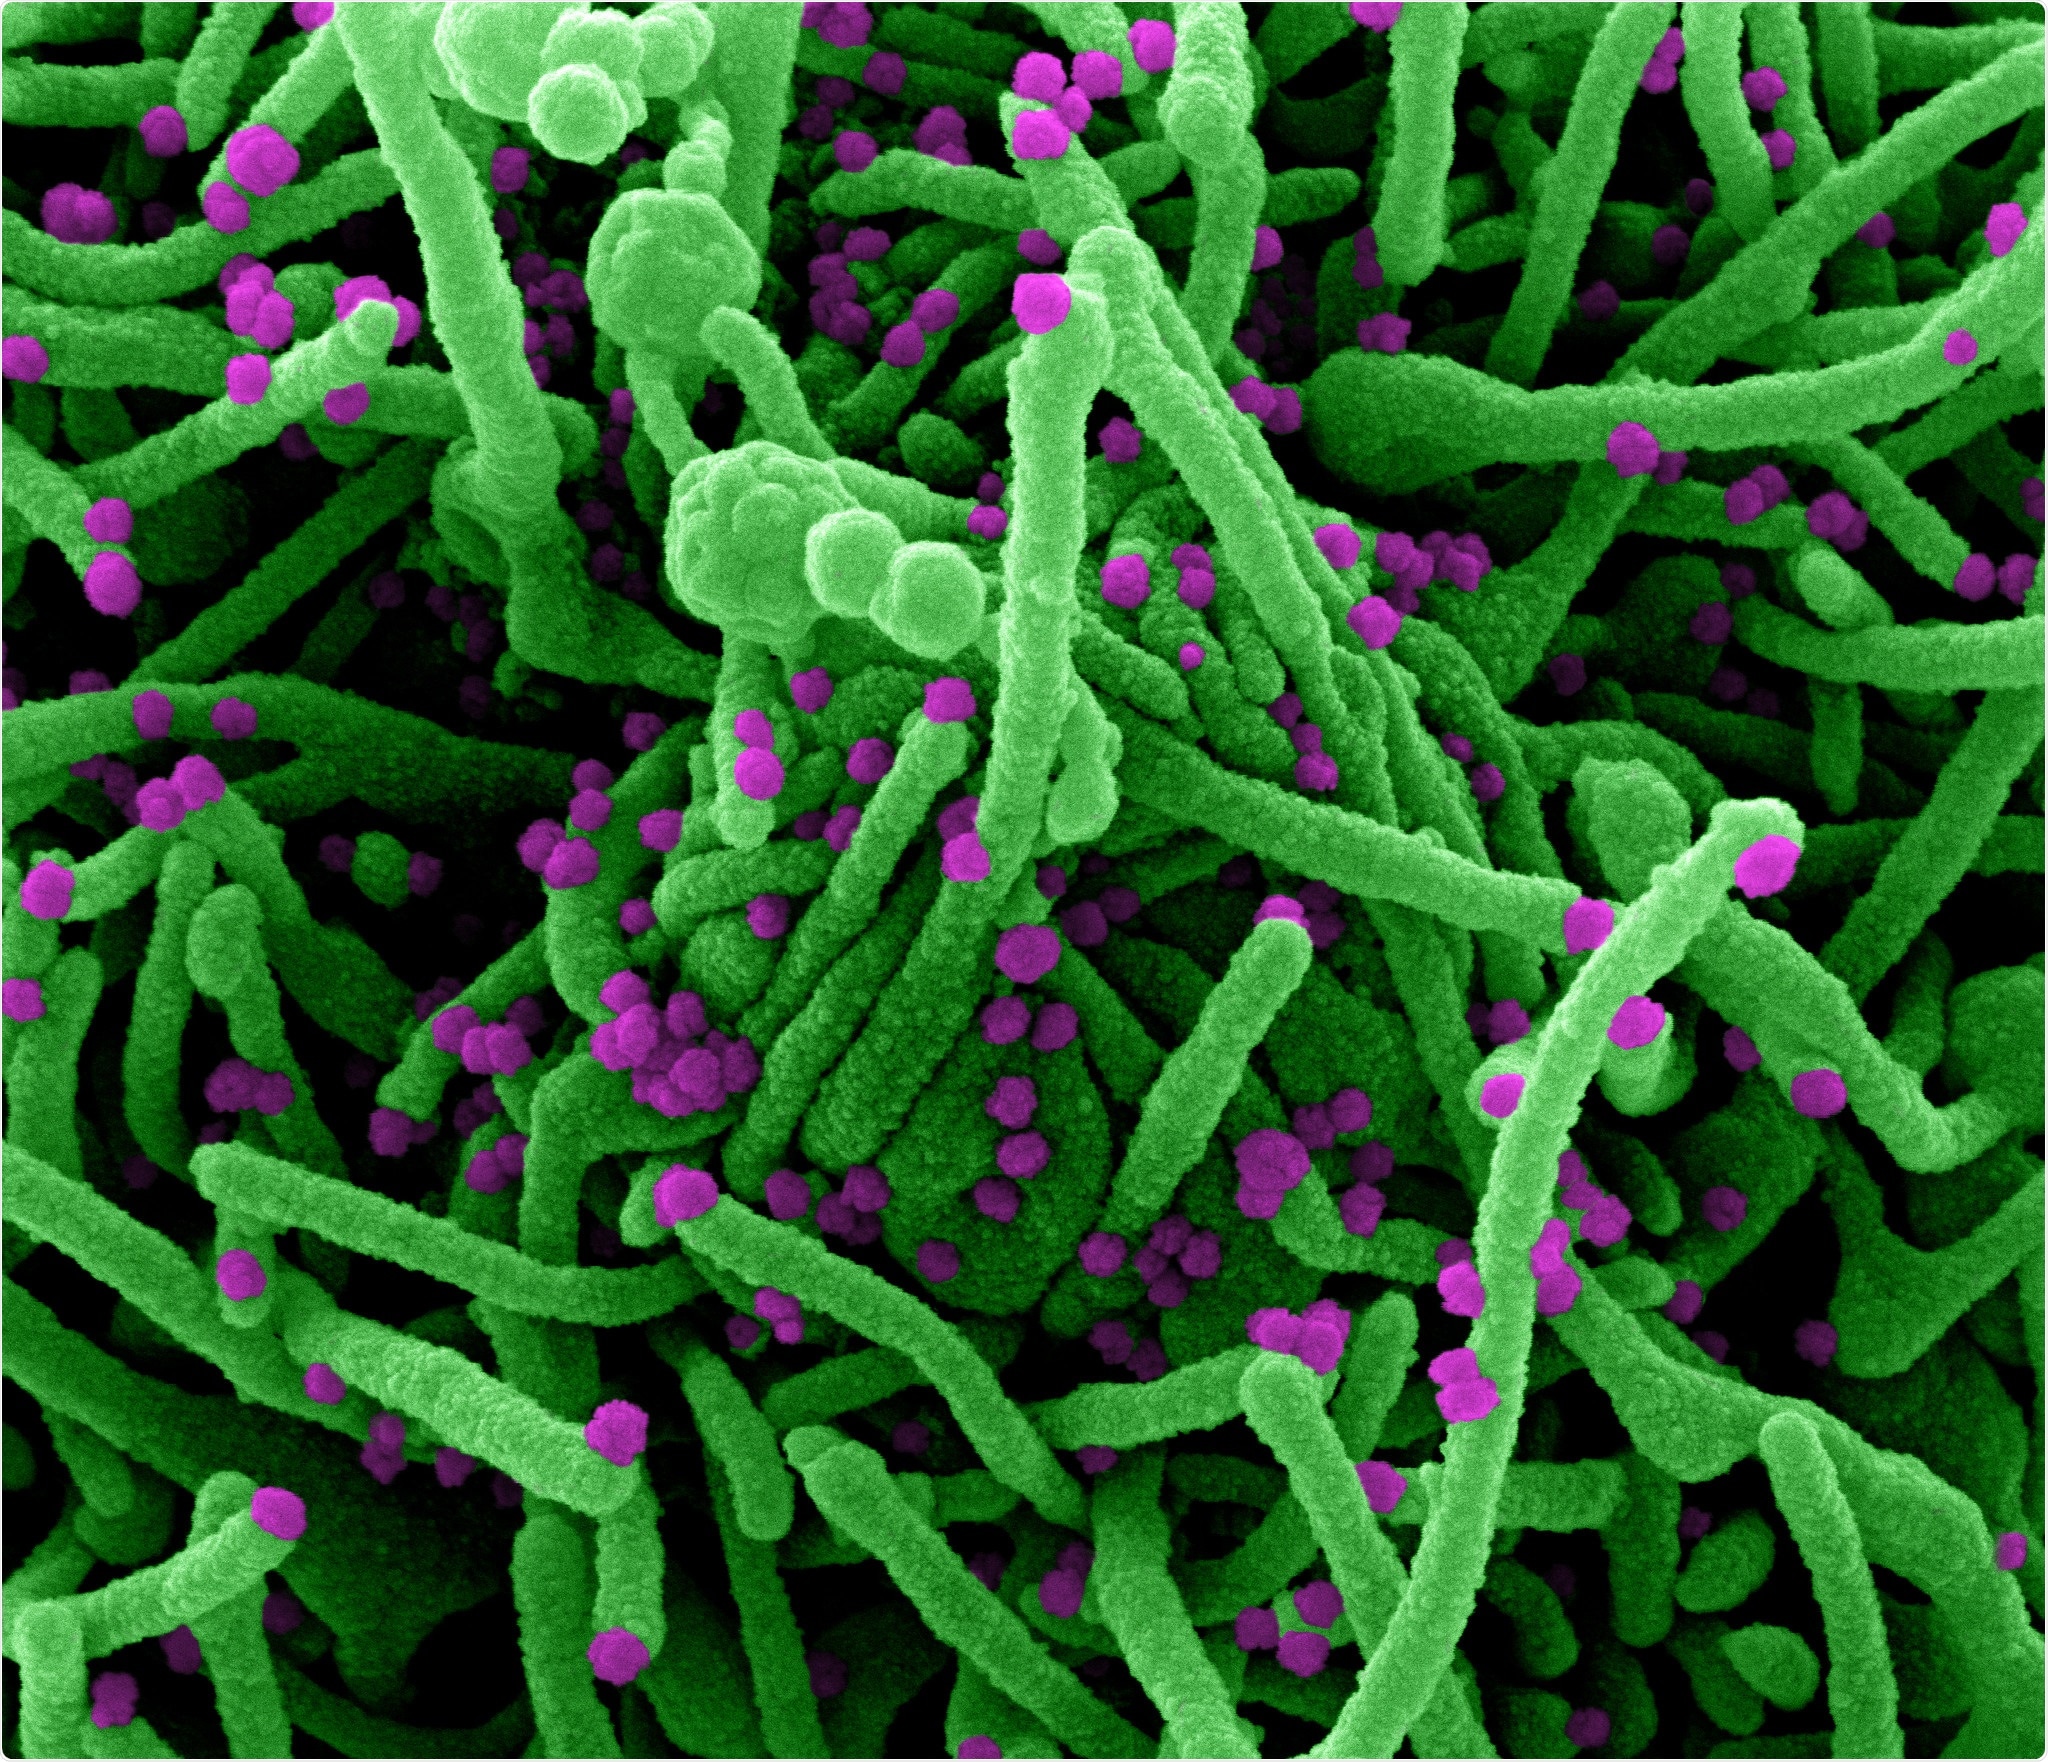 Micrográfo de electrón de la exploración de Colorized de una célula (verde) infectada con las partículas del virus SARS-CoV-2 (púrpuras), aisladas de una muestra paciente. La imagen capturada en el NIAID integró el centro de investigación en el fuerte Detrick, Maryland. Haber: NIAID